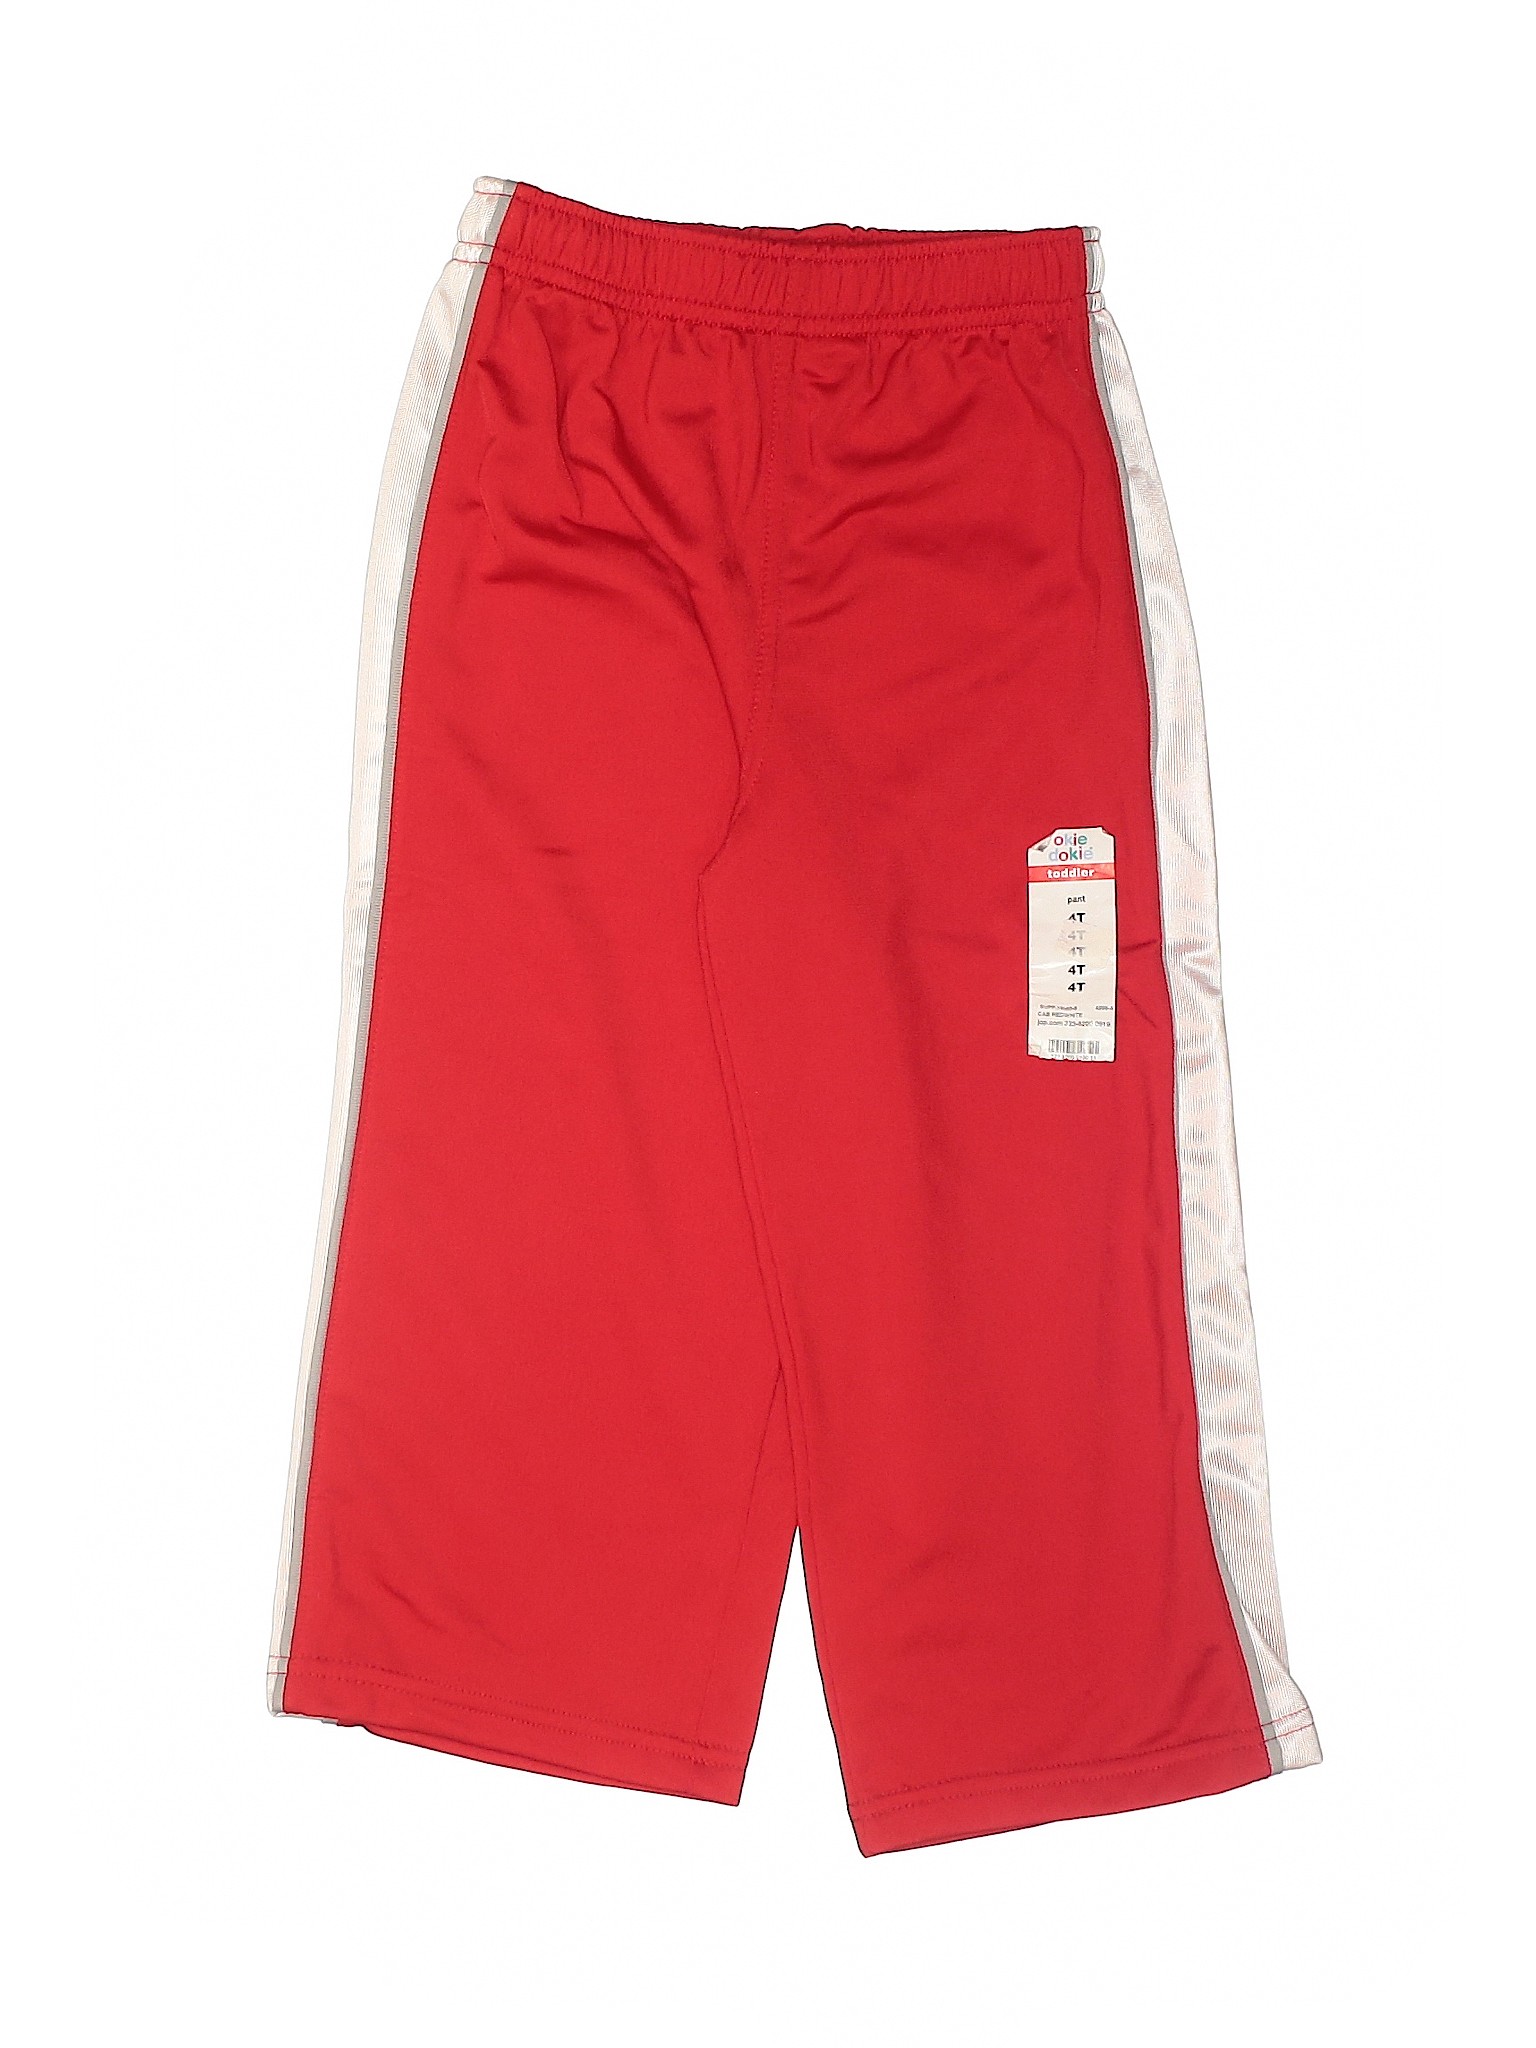 NWT Okie Dokie Boys Red Track Pants 4T | eBay